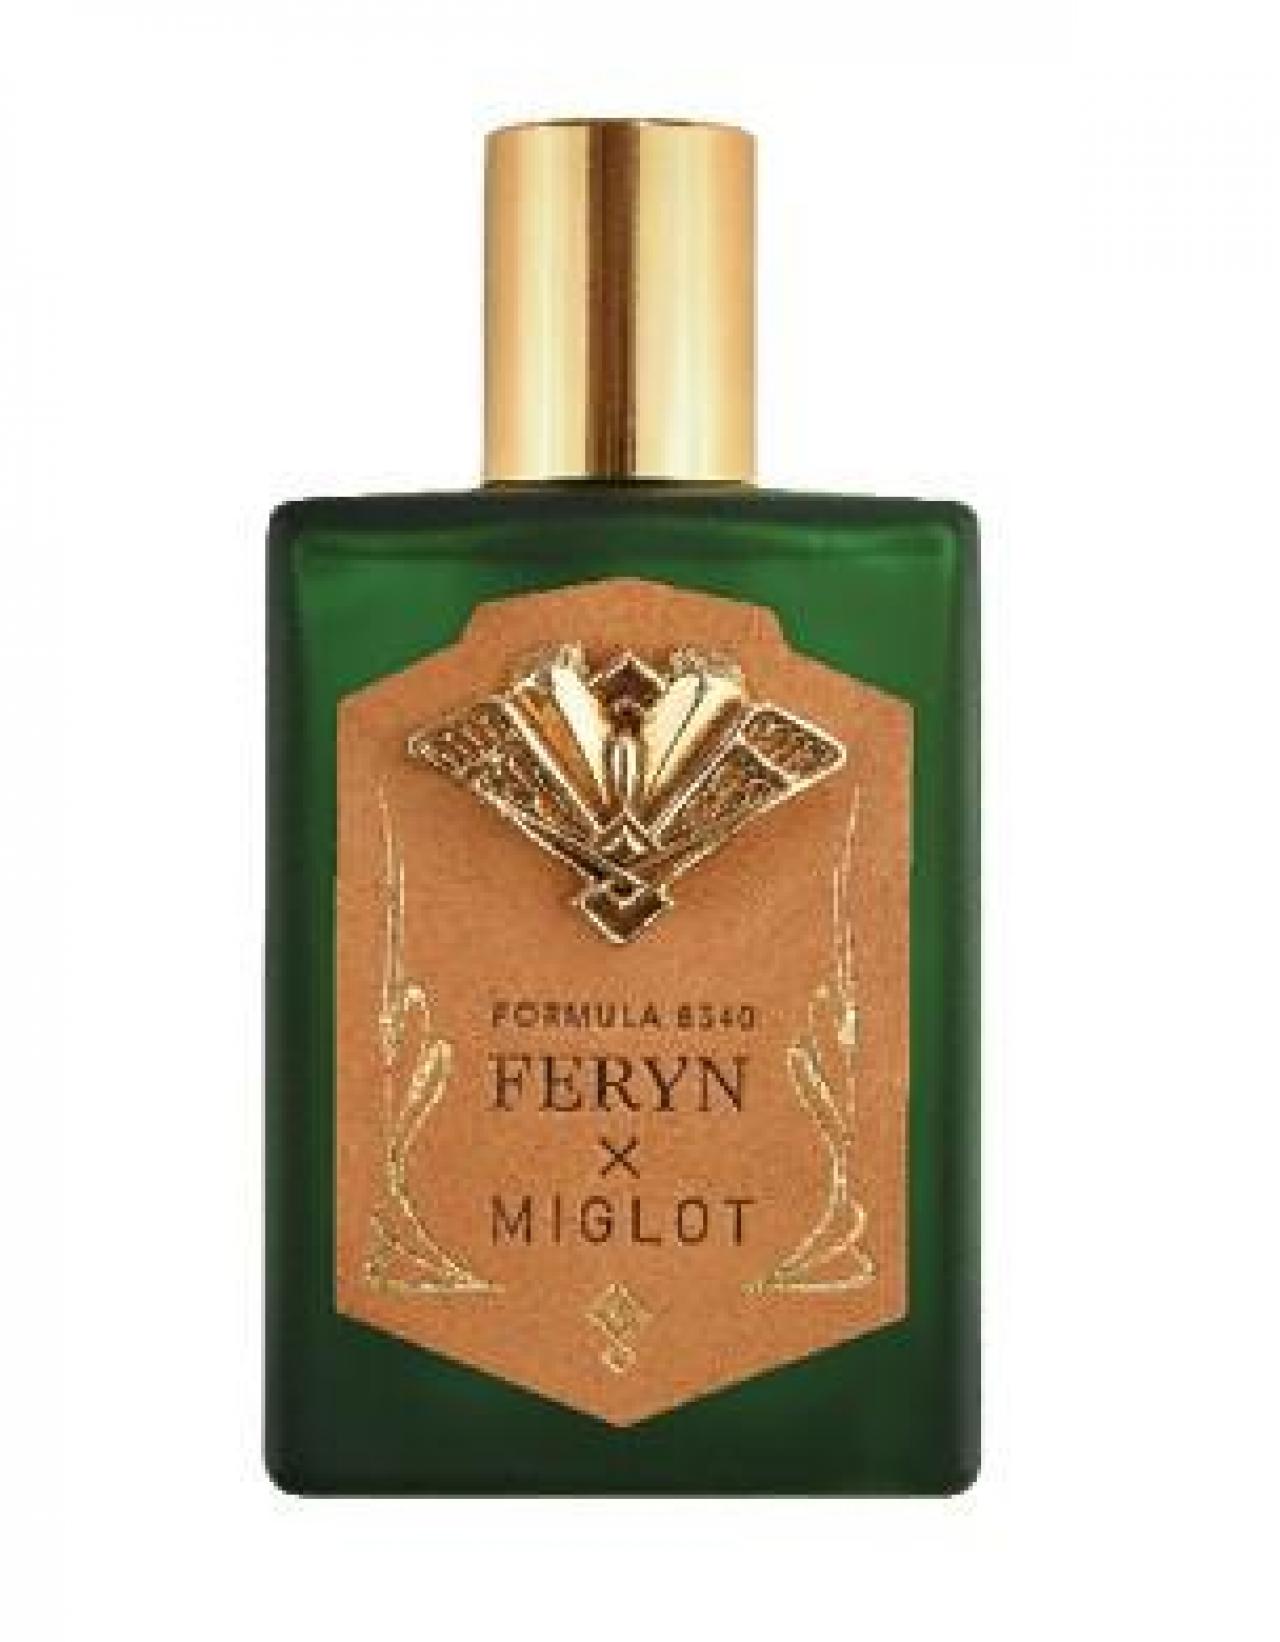 Een juweel van een parfum dat de kracht van familie en vriendschap weerspiegelt. Eau de parfum 8540 - € 108,50 - Feryn x Miglot, miglot.be.